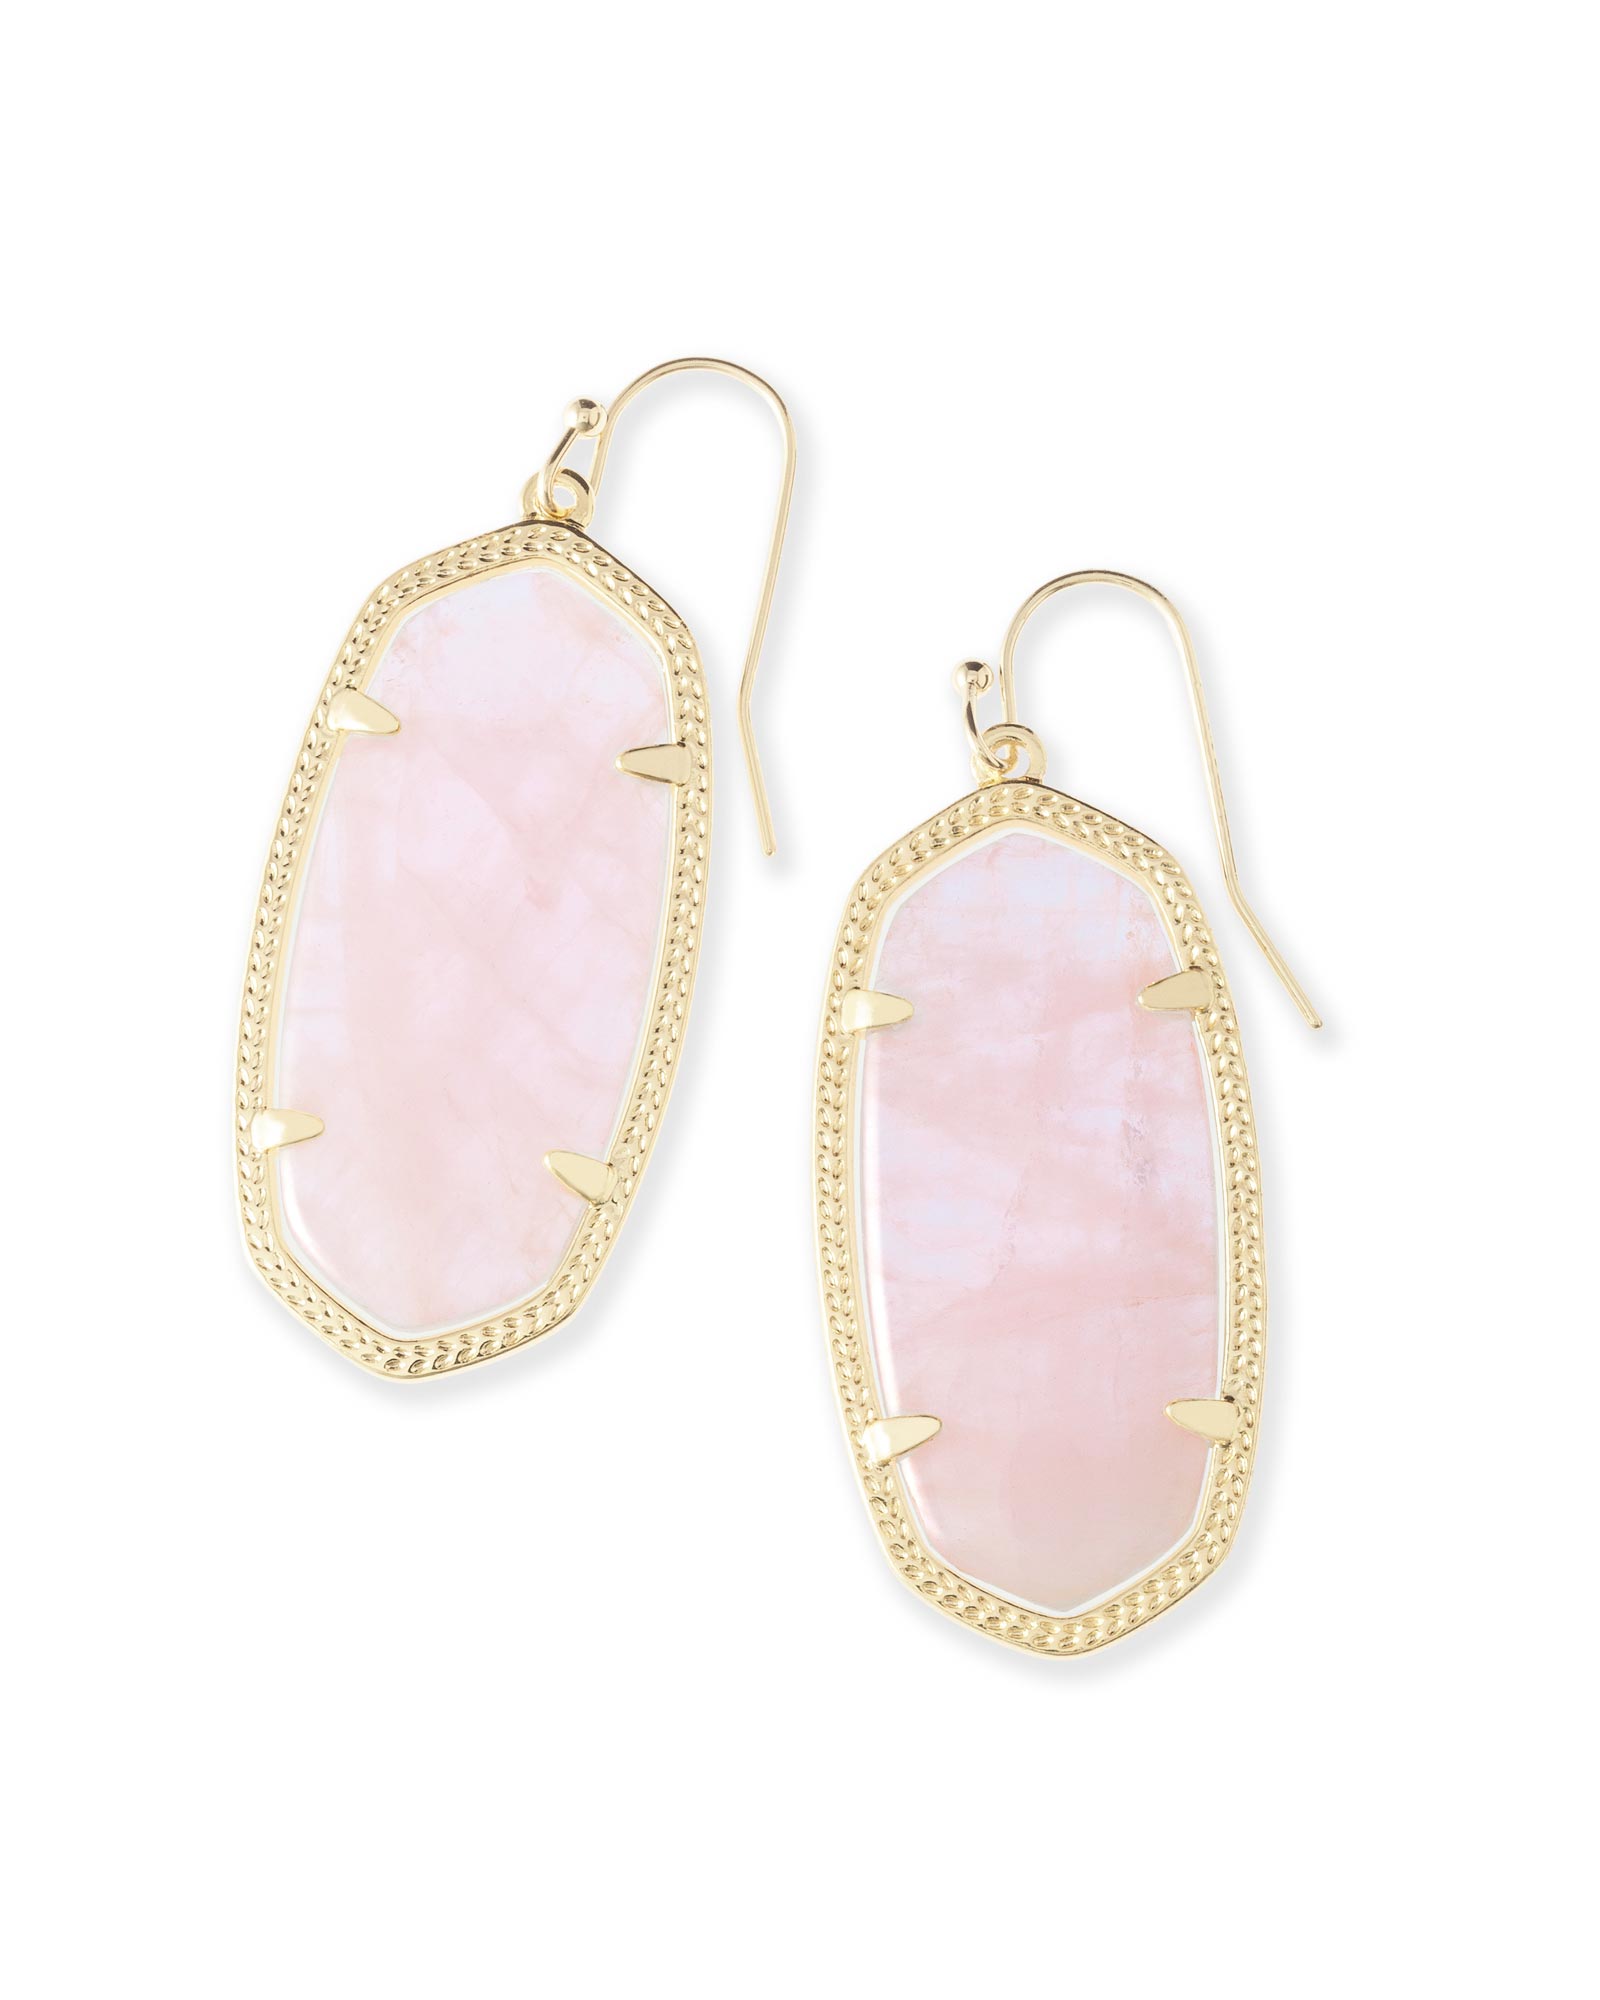 Elle Gold Drop Earrings in Rose Quartz | Kendra Scott